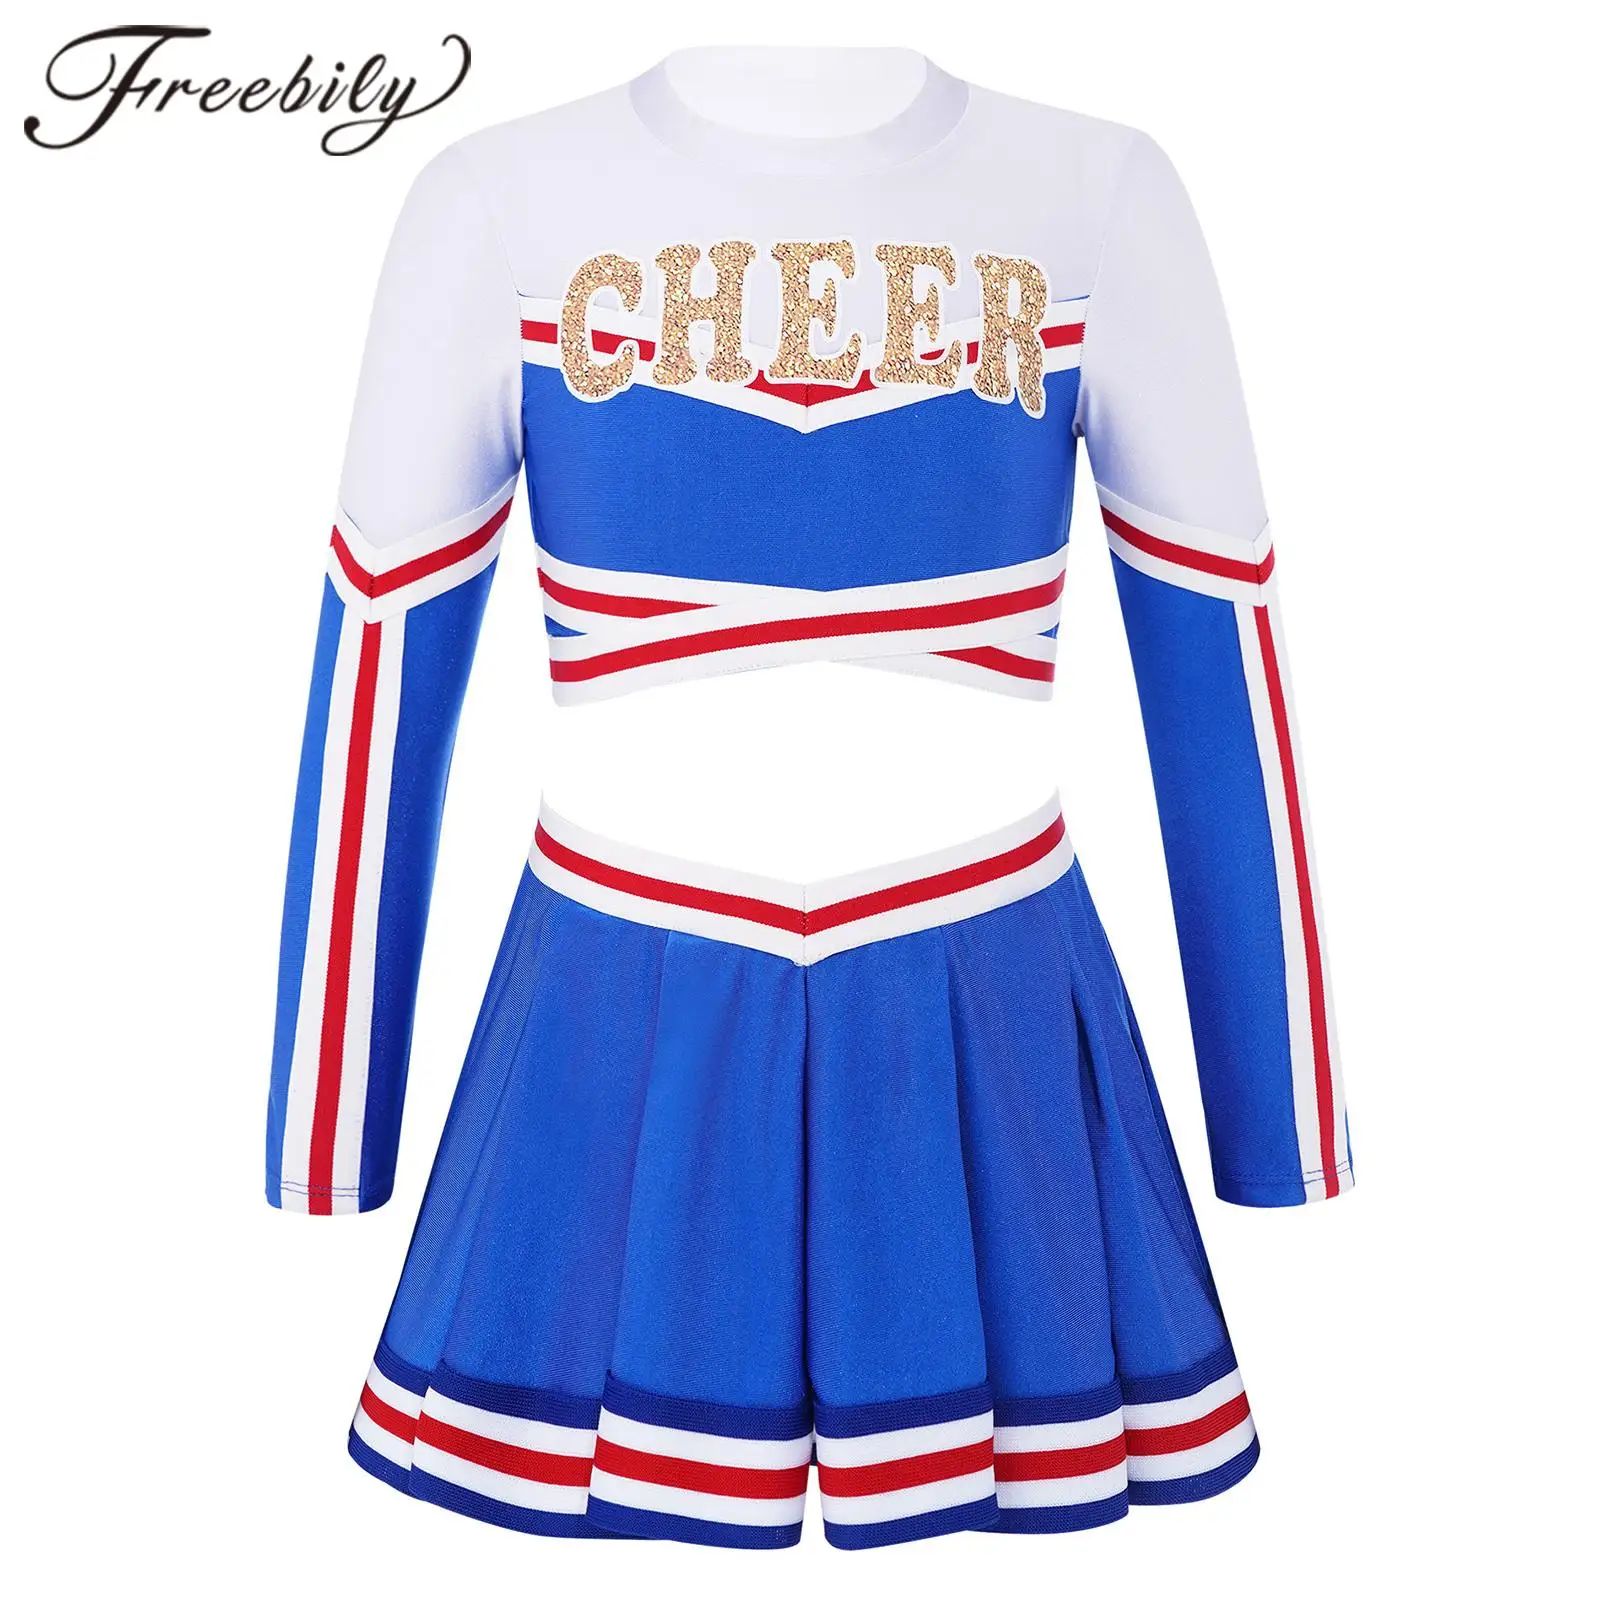 Freebily Costume Pompom Girl Fille Enfant Cheerleaders